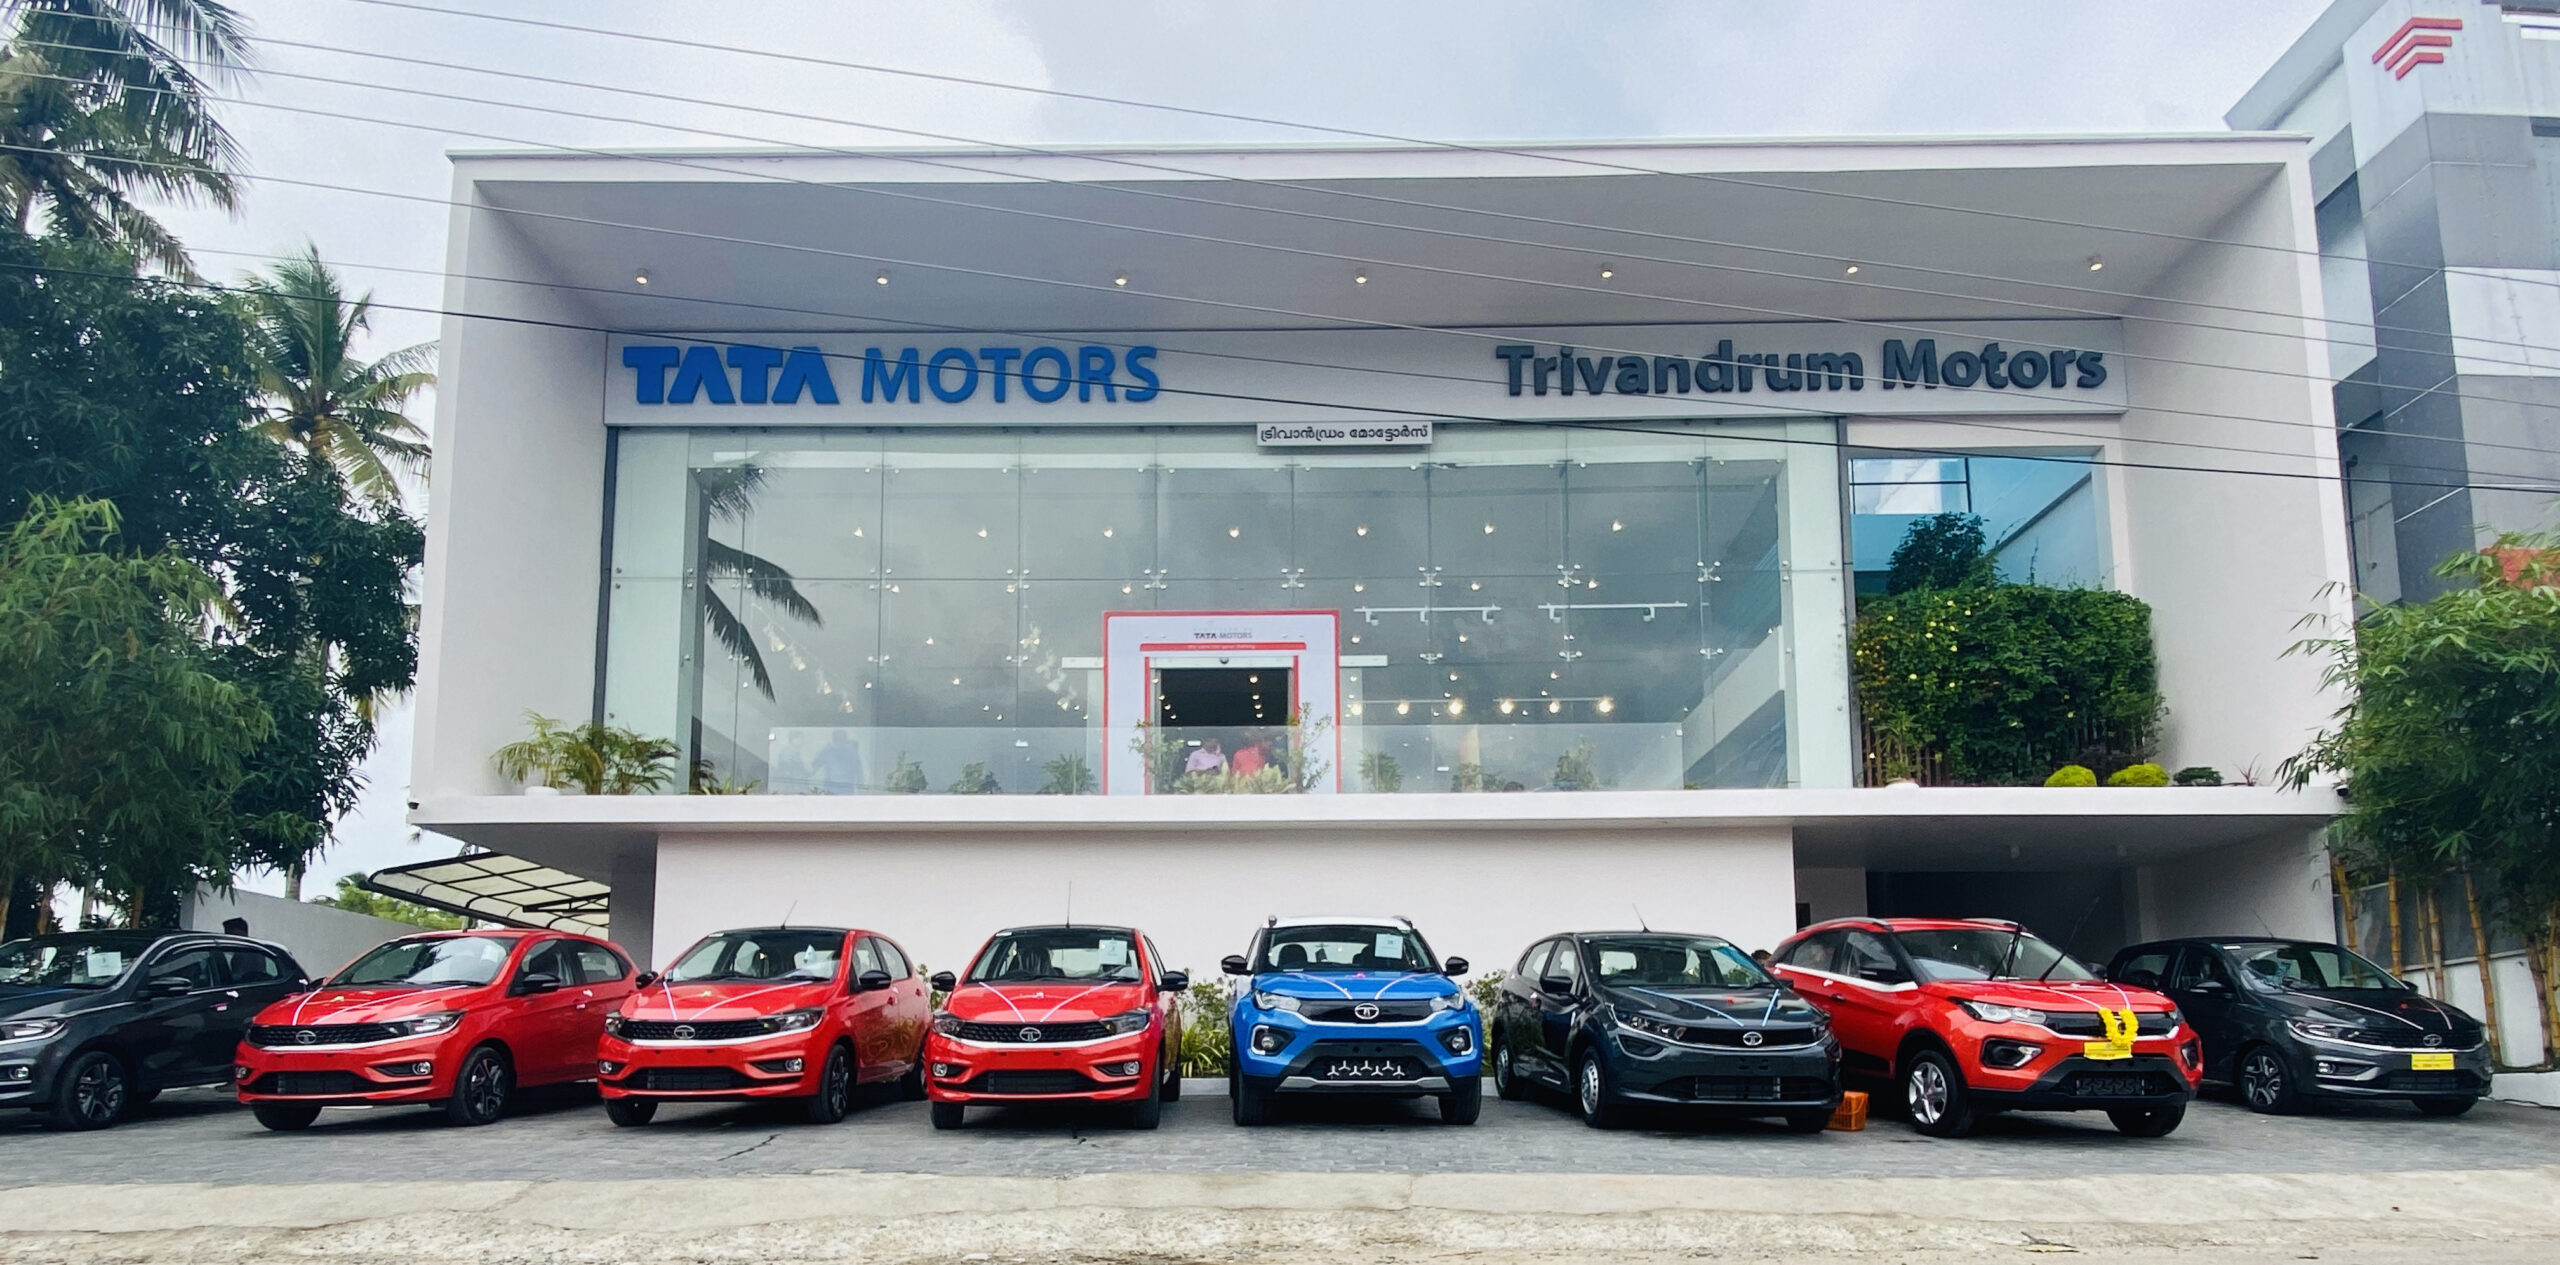 Best TATA Car Showroom in Kerala, Trivandrum Trivandrum Motors